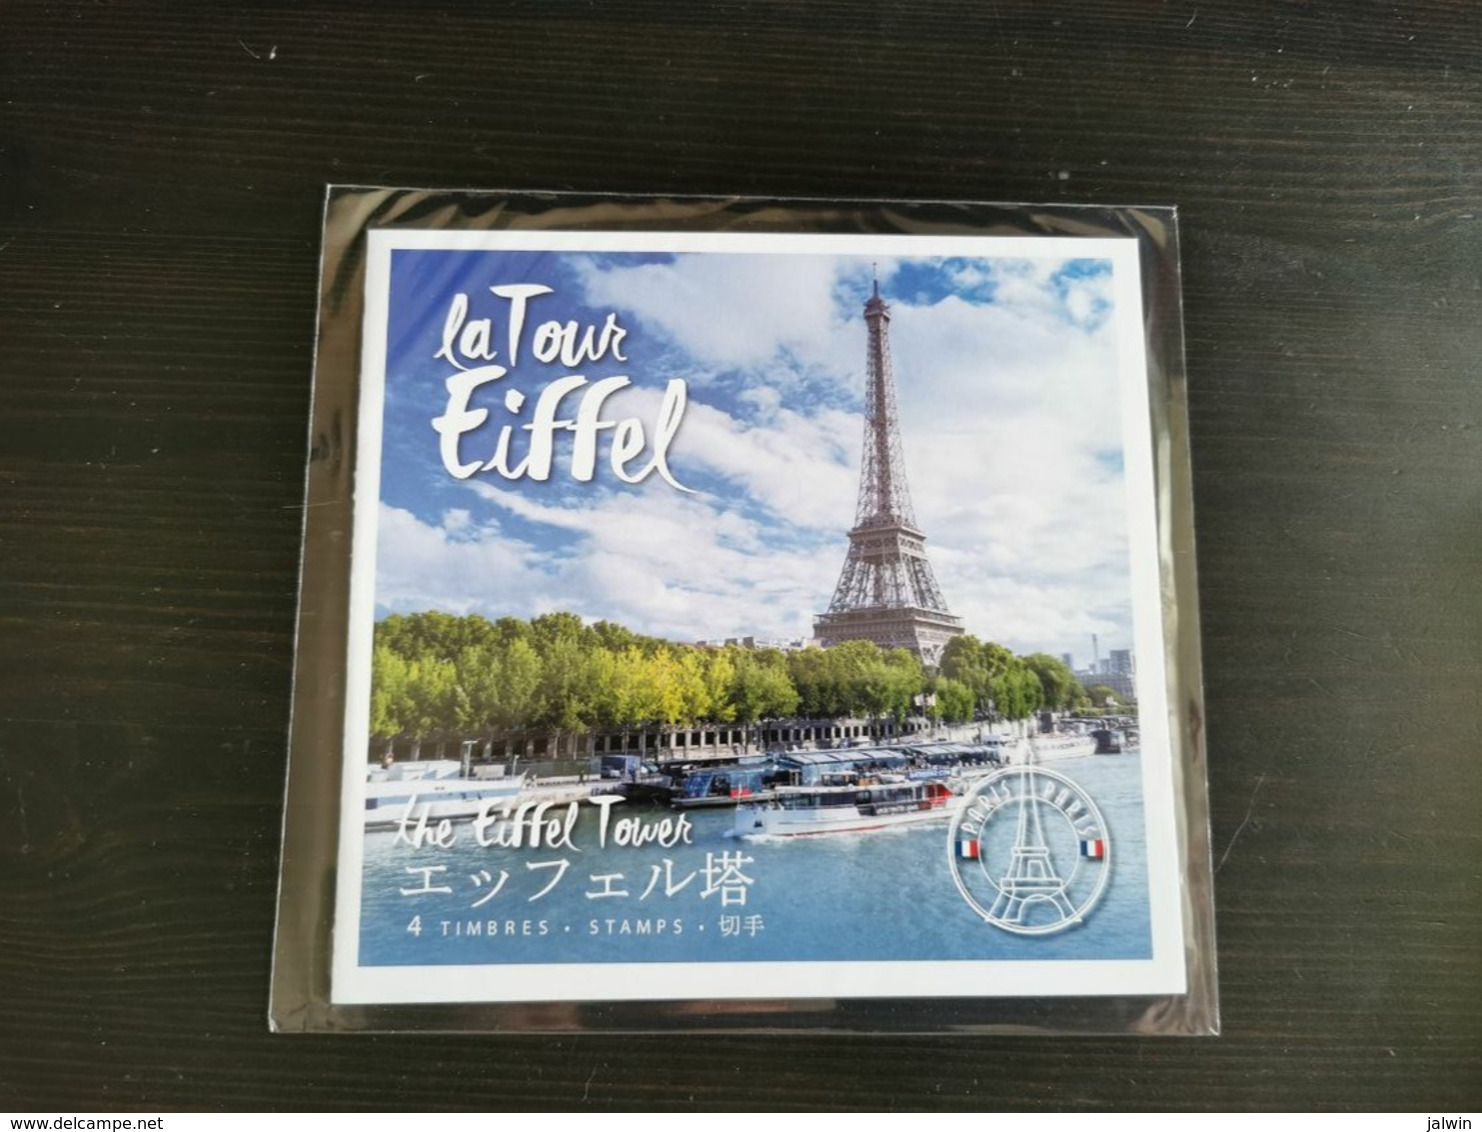 FRANCE COLLECTOR 2018 - LA TOUR EIFFEL - 4 Timbres Adhésifs 20g - SOUS BLISTER - Collectors